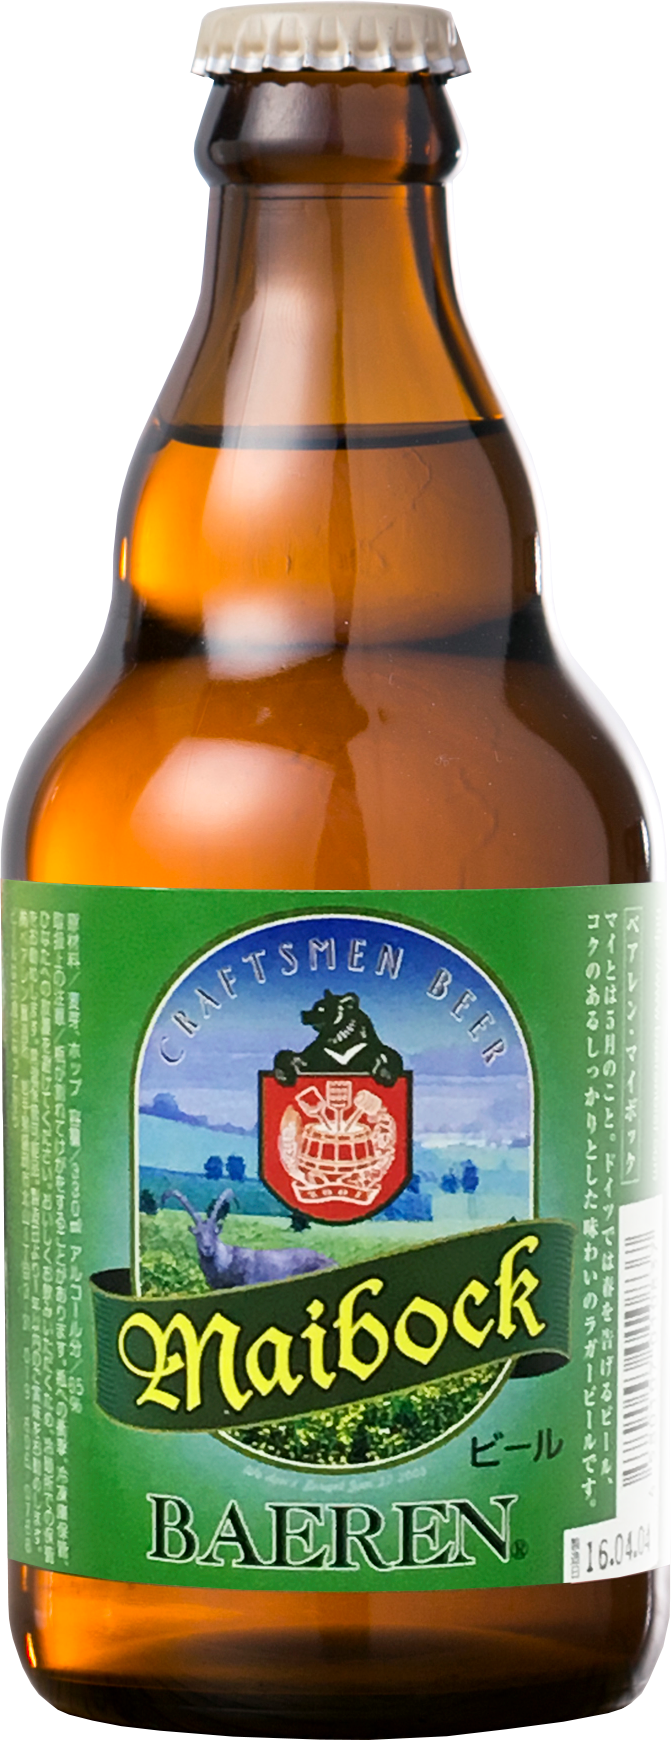 春を告げる季節限定ビール ベアレン醸造所の ベアレン マイボック 4月7日から限定販売中 日本ビアジャーナリスト協会